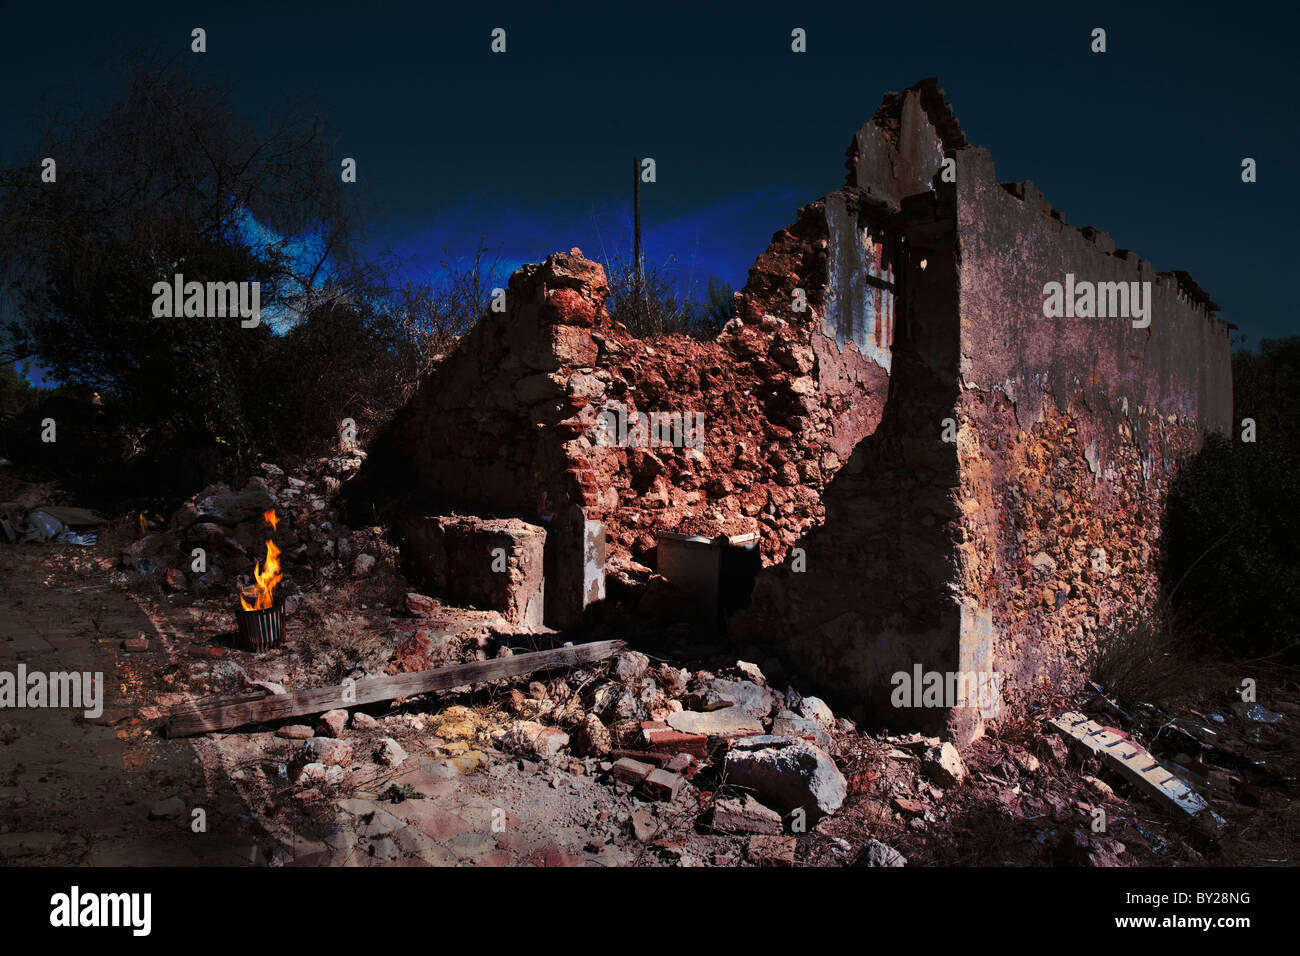 Gruseligen verlassenen verfallenden Gebäude in der Nacht mit einem Feuer in einem Metallkorb. Stockfoto